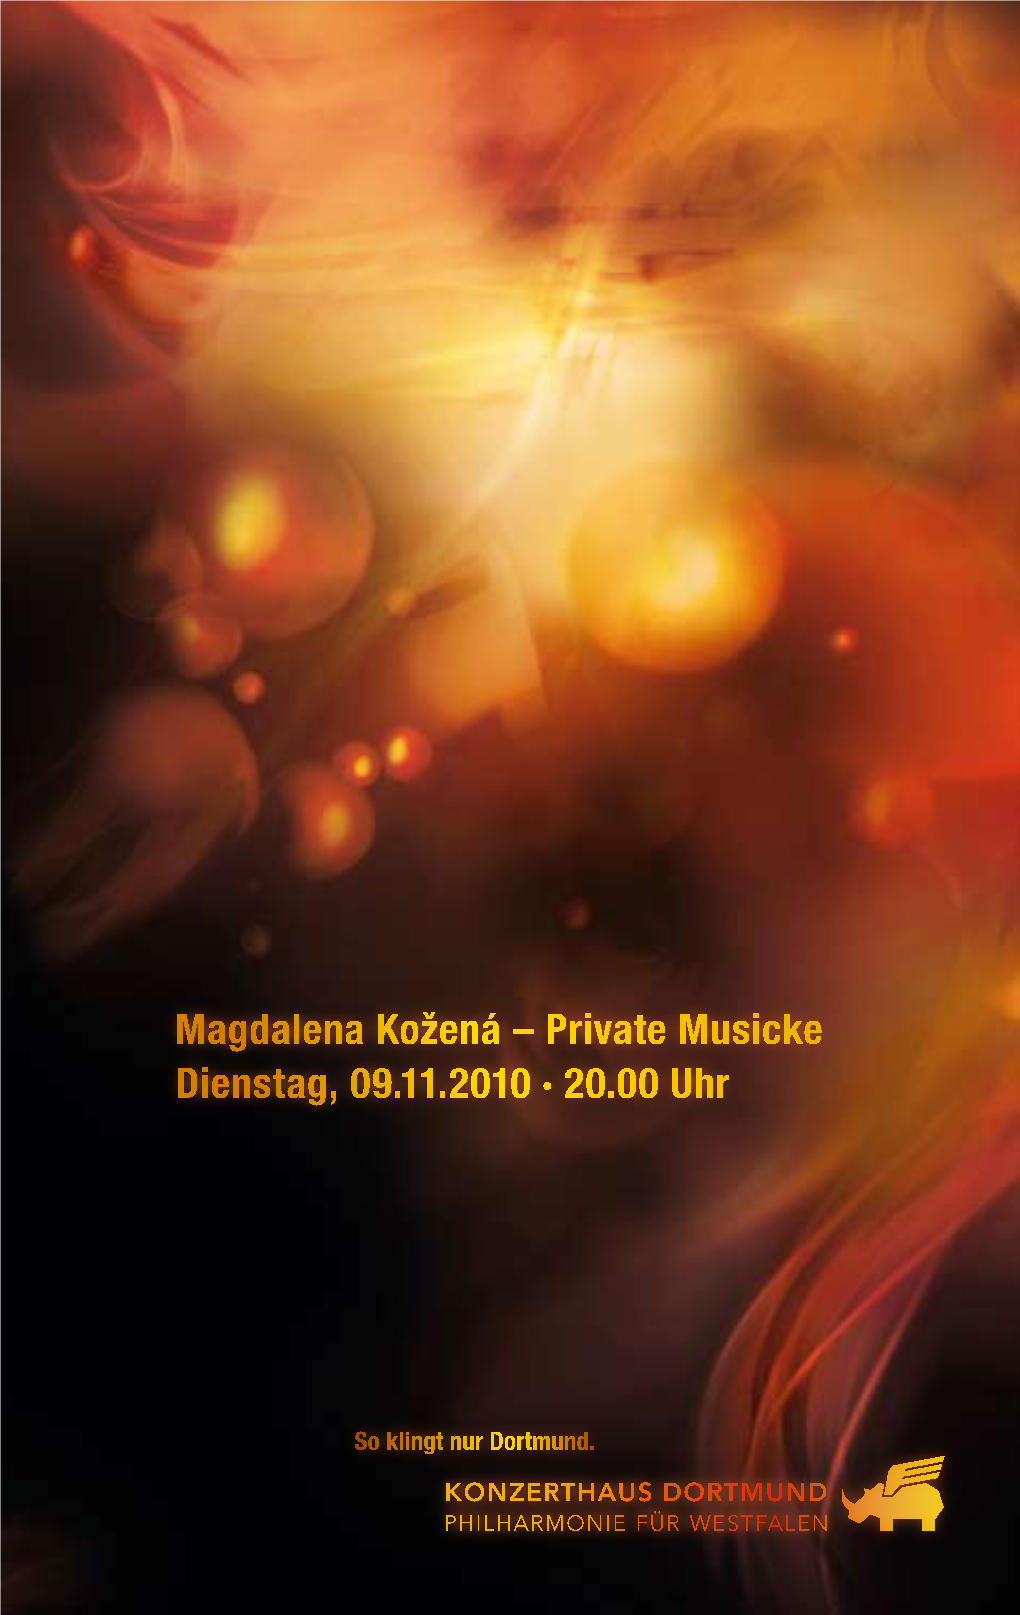 20.00 Uhr Magdalena Kožená – Private Musicke Dienstag, 09.11.2010